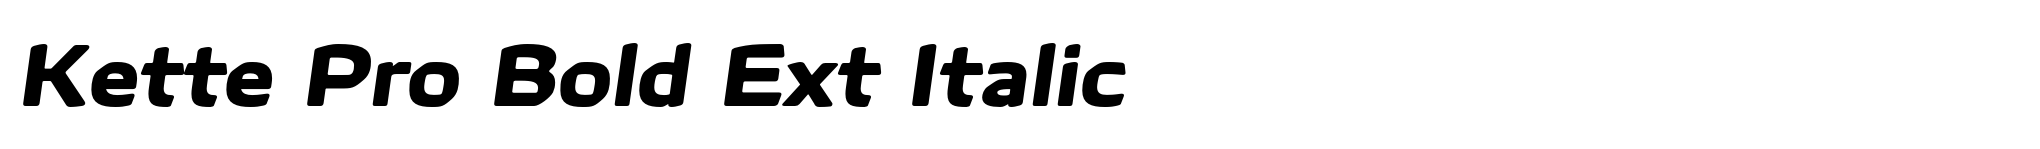 Kette Pro Bold Ext Italic image